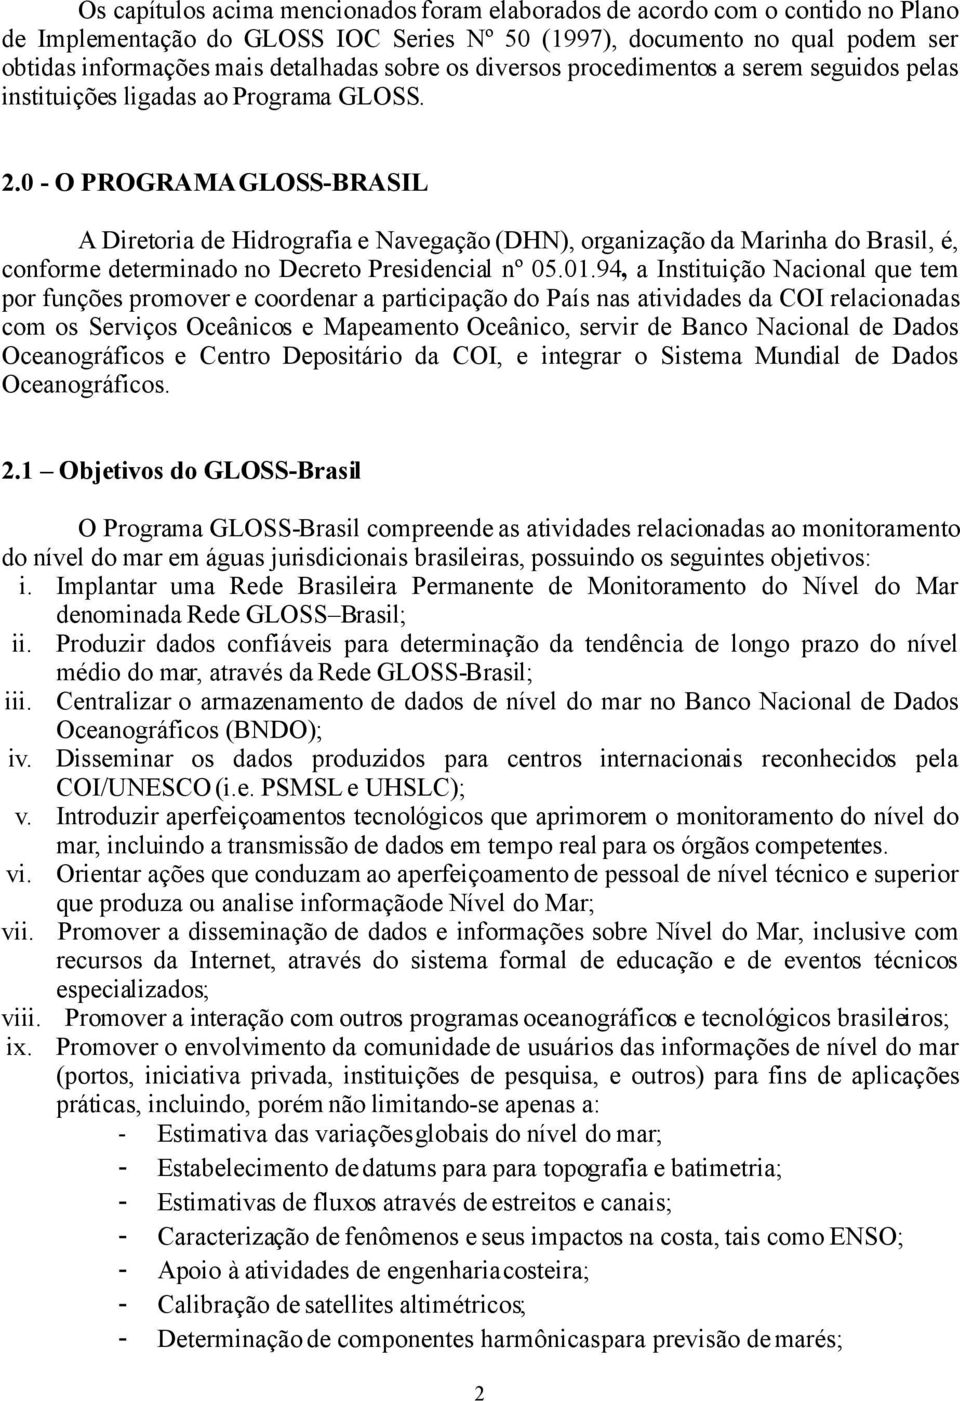 0 - O PROGRAMA GLOSS-BRASIL A Diretoria de Hidrografia e Navegação (DHN), organização da Marinha do Brasil, é, conforme determinado no Decreto Presidencial nº 05.01.